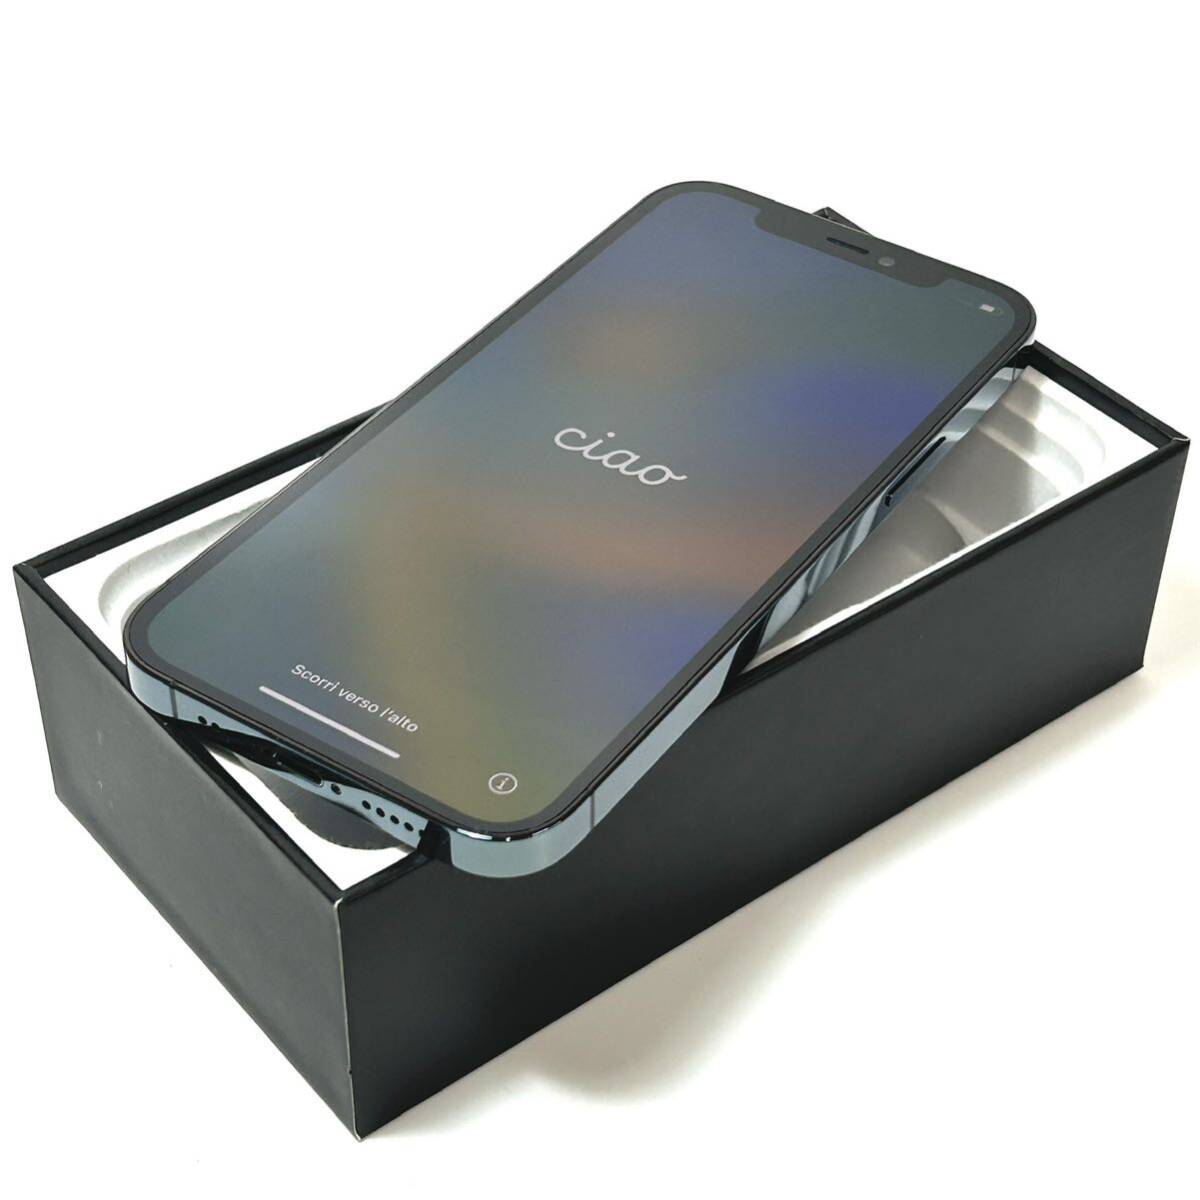 [ очень красивый товар ]AppleliPhone 12 Pro 128GBlSIM свободный l максимальный аккумулятор емкость 90%l Pacific голубой l рабочее состояние подтверждено l срочная доставка отправка возможно 